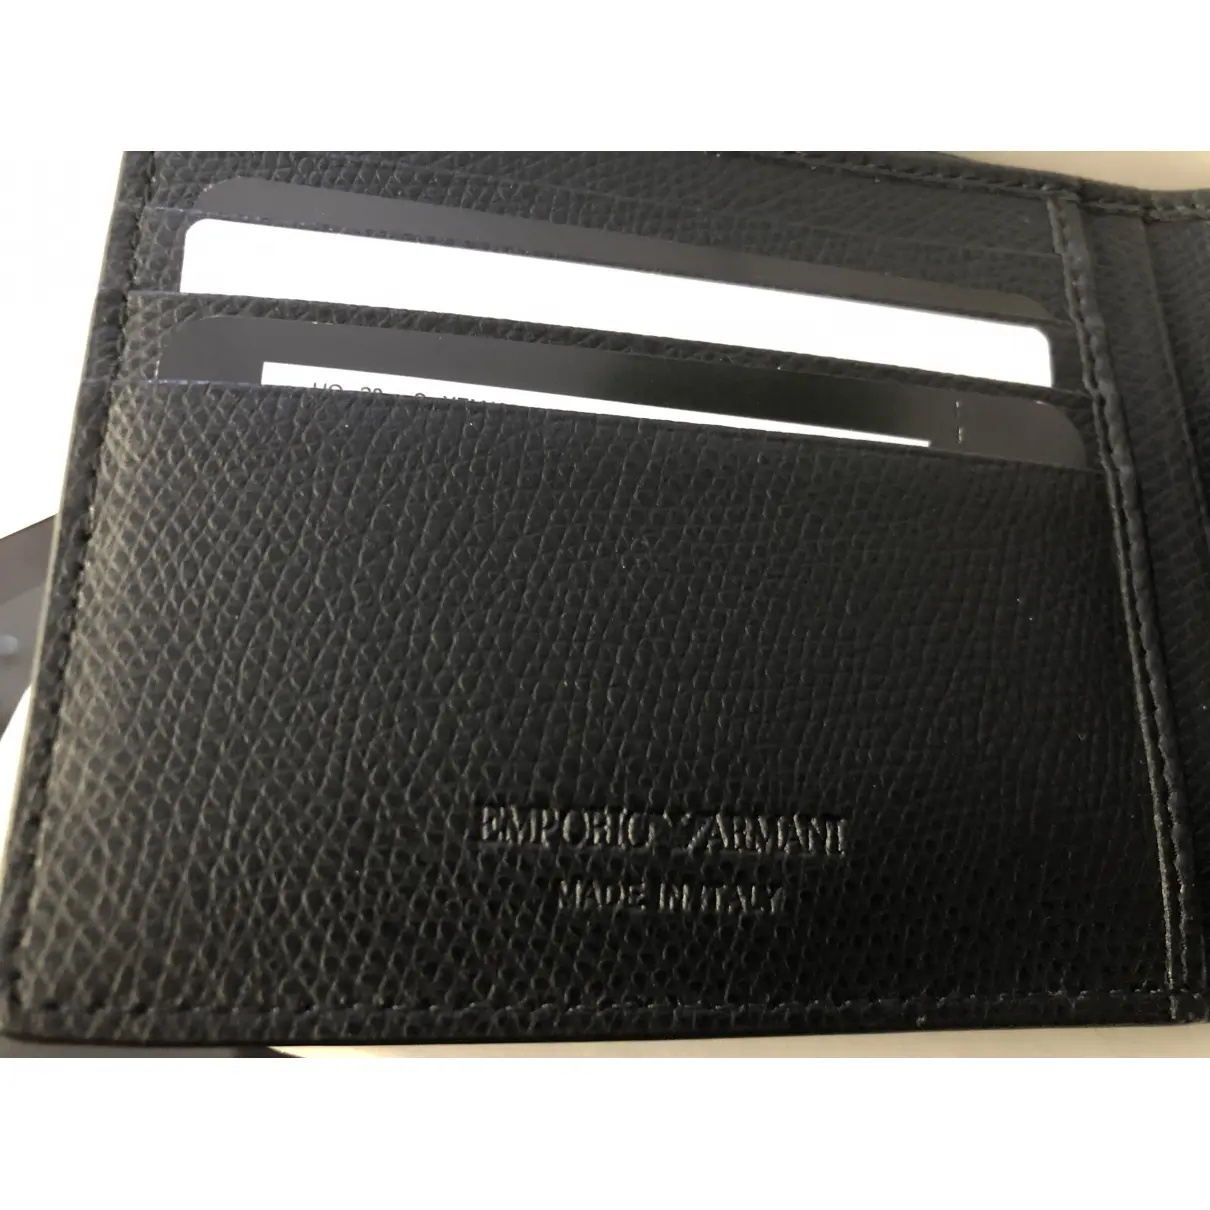 Luxury Emporio Armani Small bags, wallets & cases Men